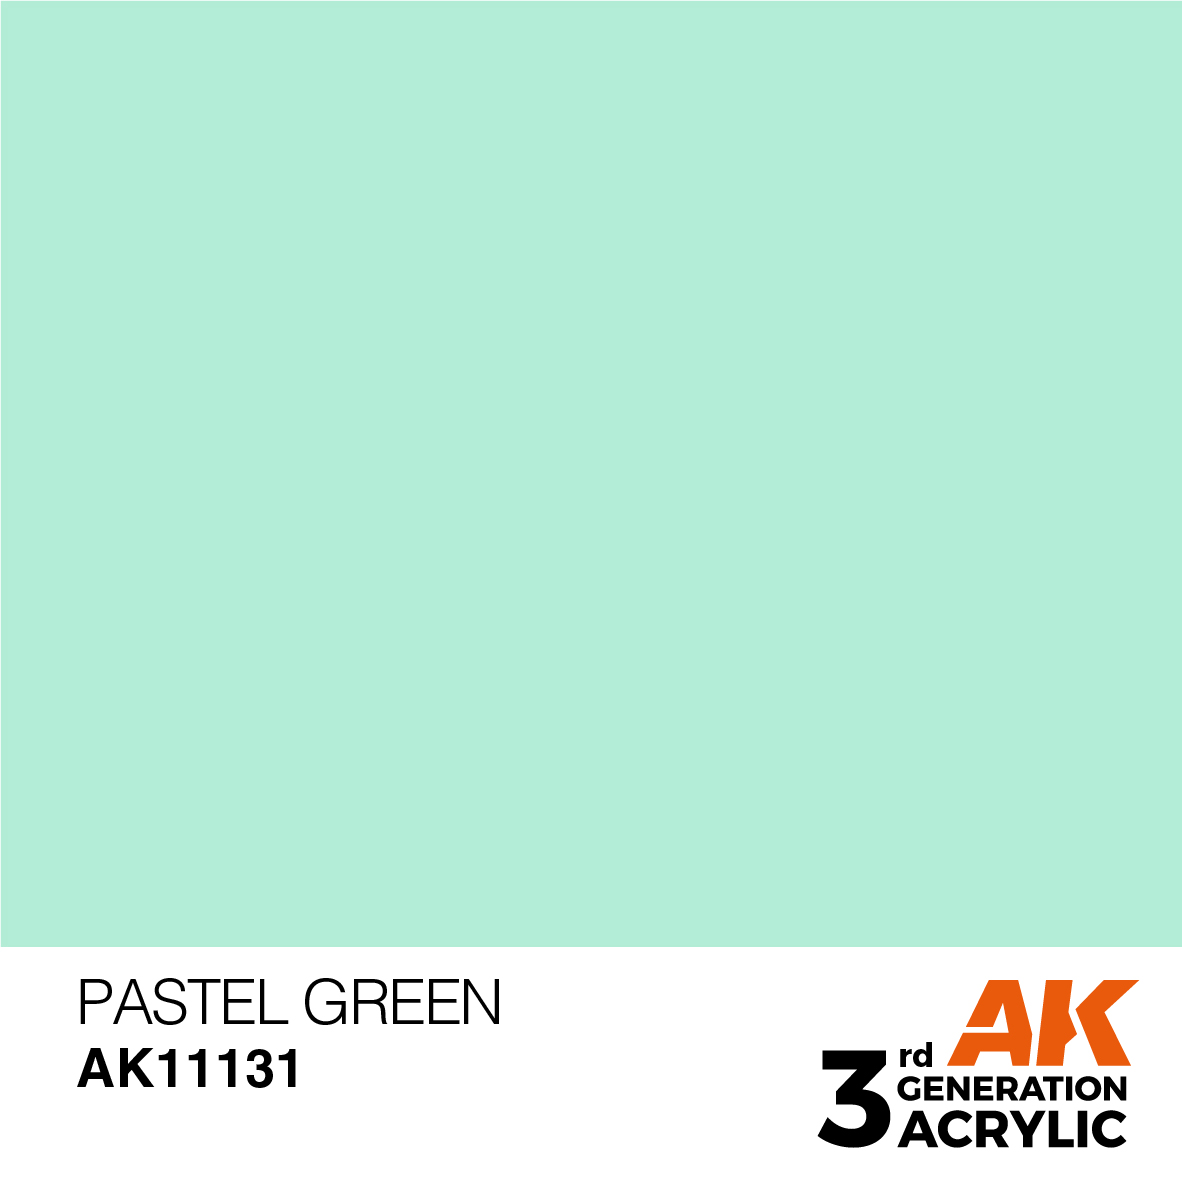 Pastel Green – Pastel